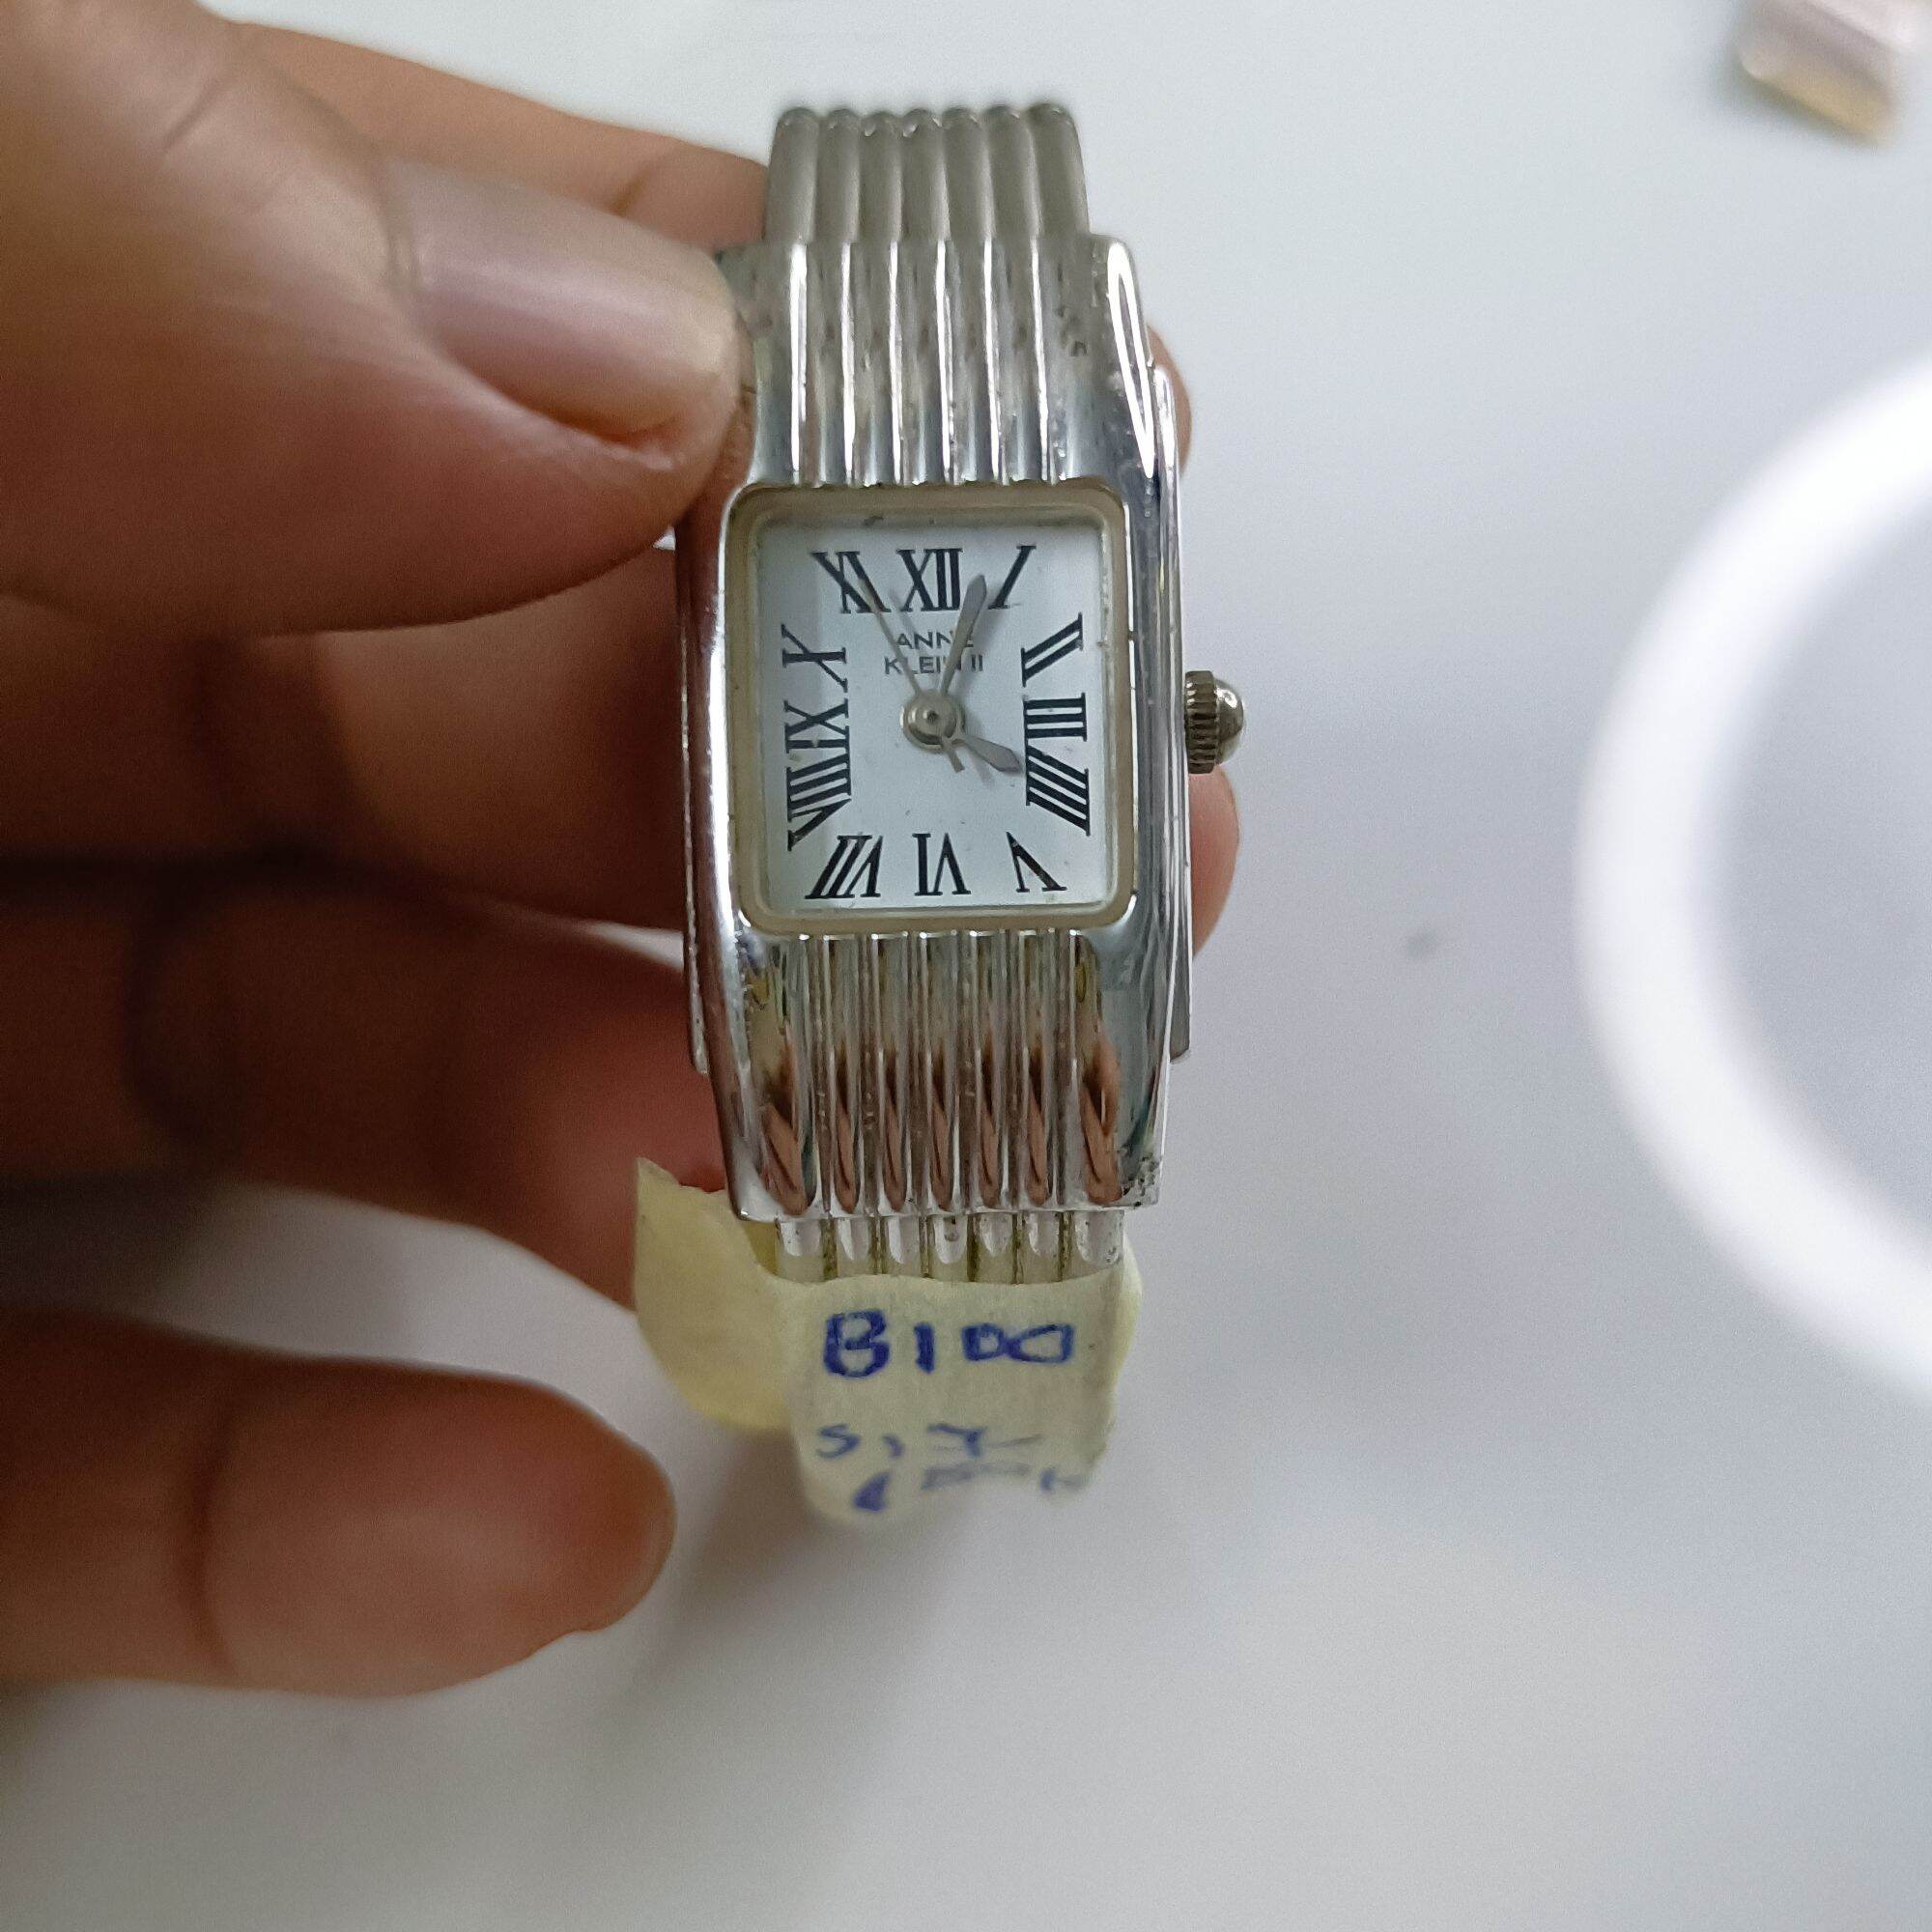 đồng hồ nữ, hiệu ANNE KLEN II, kiểu vòng tay,sz17